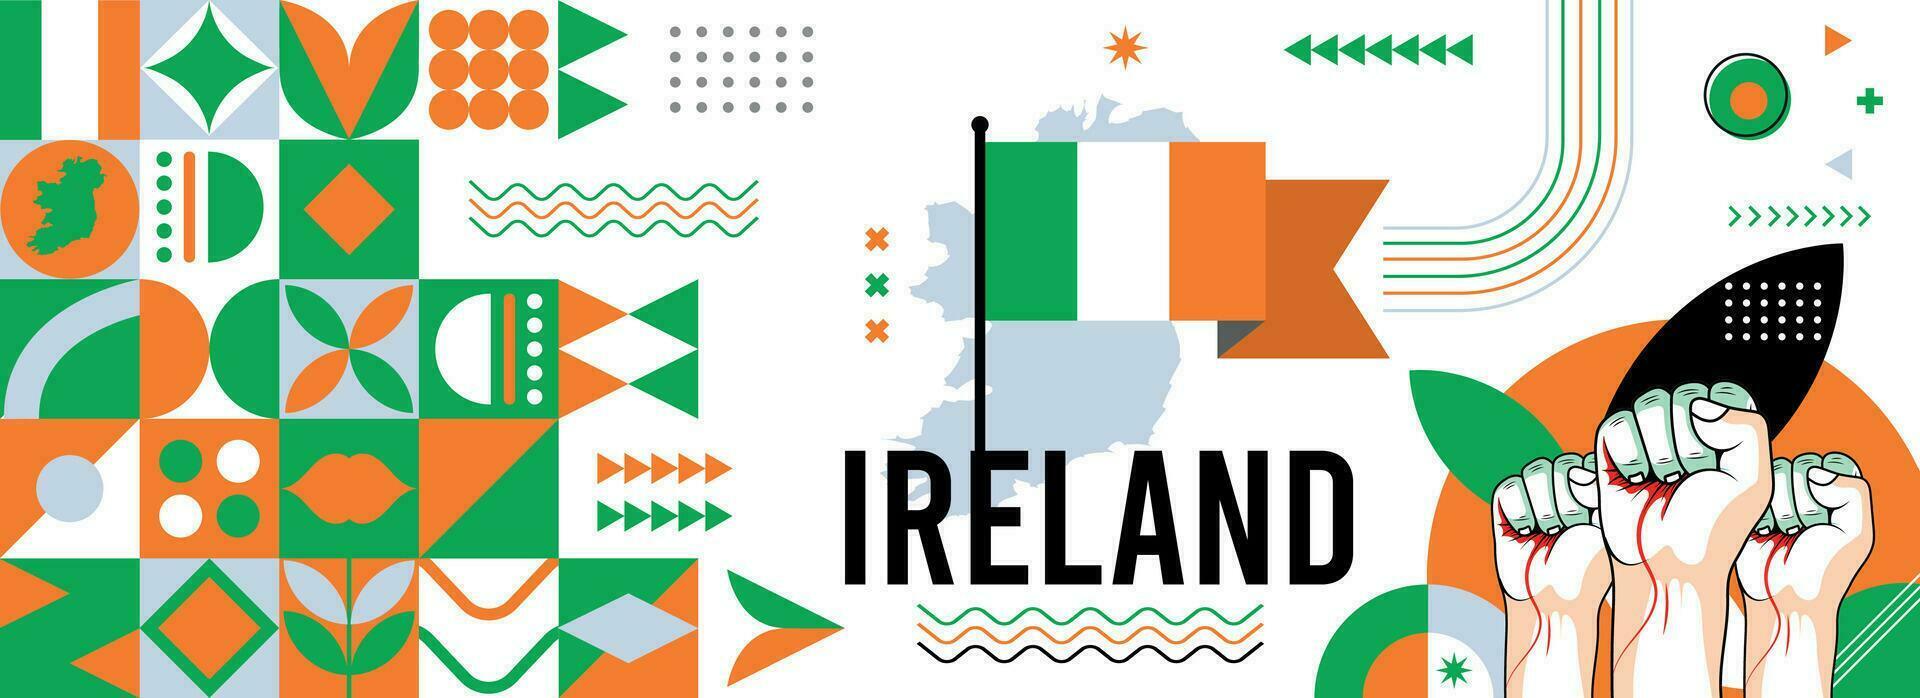 Ierland nationaal of onafhankelijkheid dag banier voor land viering. vlag en kaart van Ierland met verheven vuisten. modern retro ontwerp met typorgaphy abstract meetkundig pictogrammen. vector illustratie.